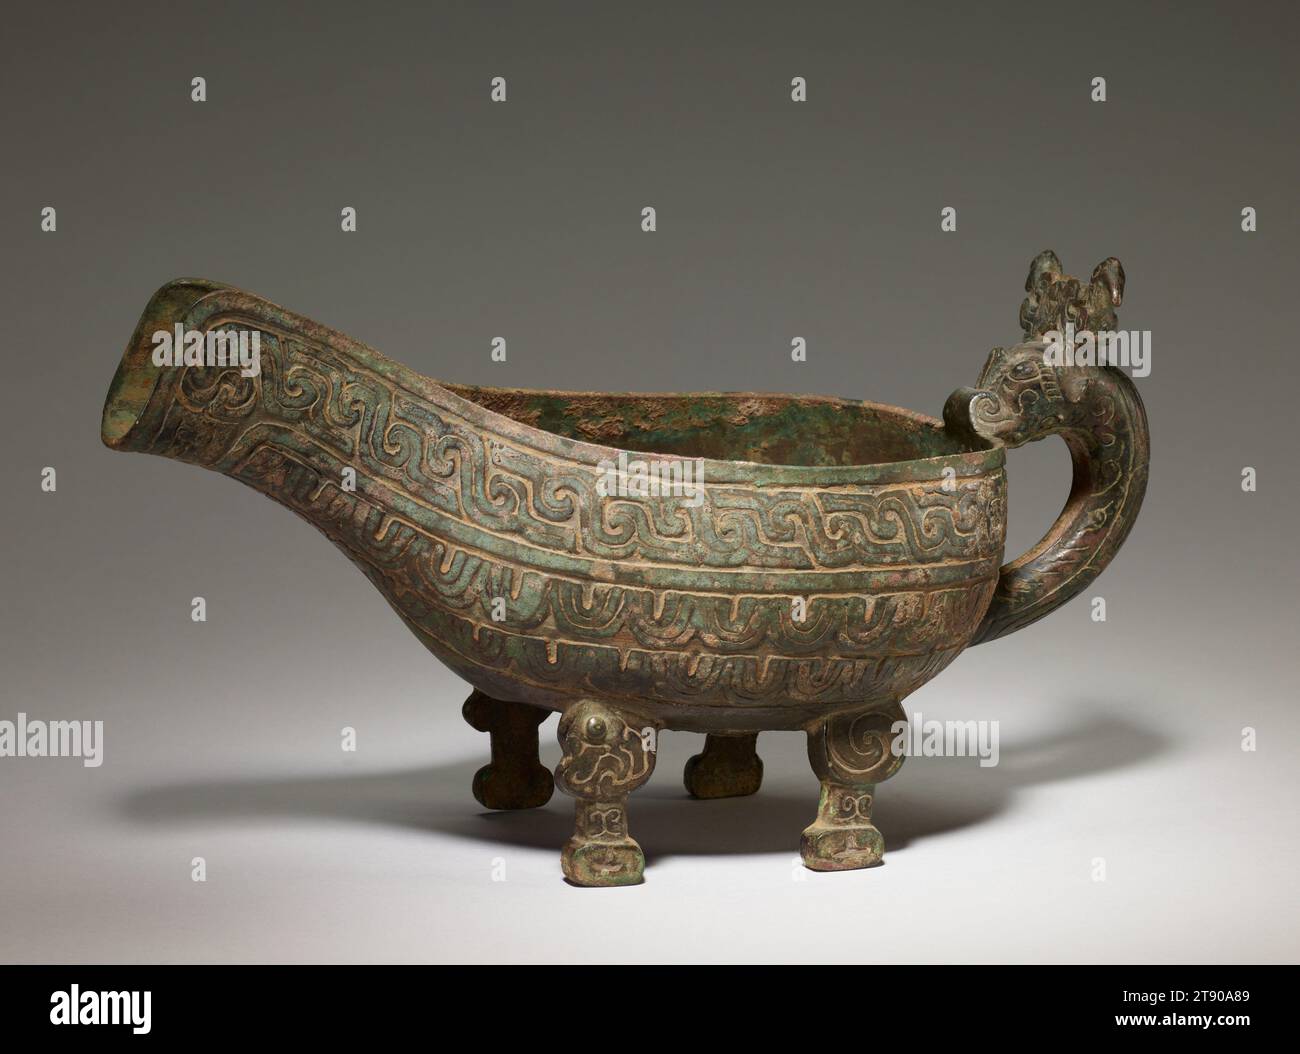 Navire d'eau Yi, 9e-8e siècle av. J.-C., 6 5/16 × 11 7/8 × 5 5/8 po., 4,2 lb. (16 × 30,2 × 14,3 cm, 1,9 kg), Bronze, Chine, 9e-8e siècle av. J.-C., ce récipient en forme de gourde est connu sous le nom de yi et a été utilisé comme récipient à eau. Les Yi apparaissent pour la première fois au cours de la dynastie Zhou du milieu de l'Ouest (c. 976–886 av. J.-C.), et sont prédominants dans les périodes ultérieures des Zhou de l'Ouest et du printemps et de l'automne (c. 885–476 av. J.-C.). Avant de mener une activité rituelle ou de s'asseoir à une fête cérémonielle, la noblesse se lavait les mains avec de l'eau versée à partir d'un yi comme celui-ci. Les fouilles archéologiques révèlent que les yi étaient souvent appariés Banque D'Images